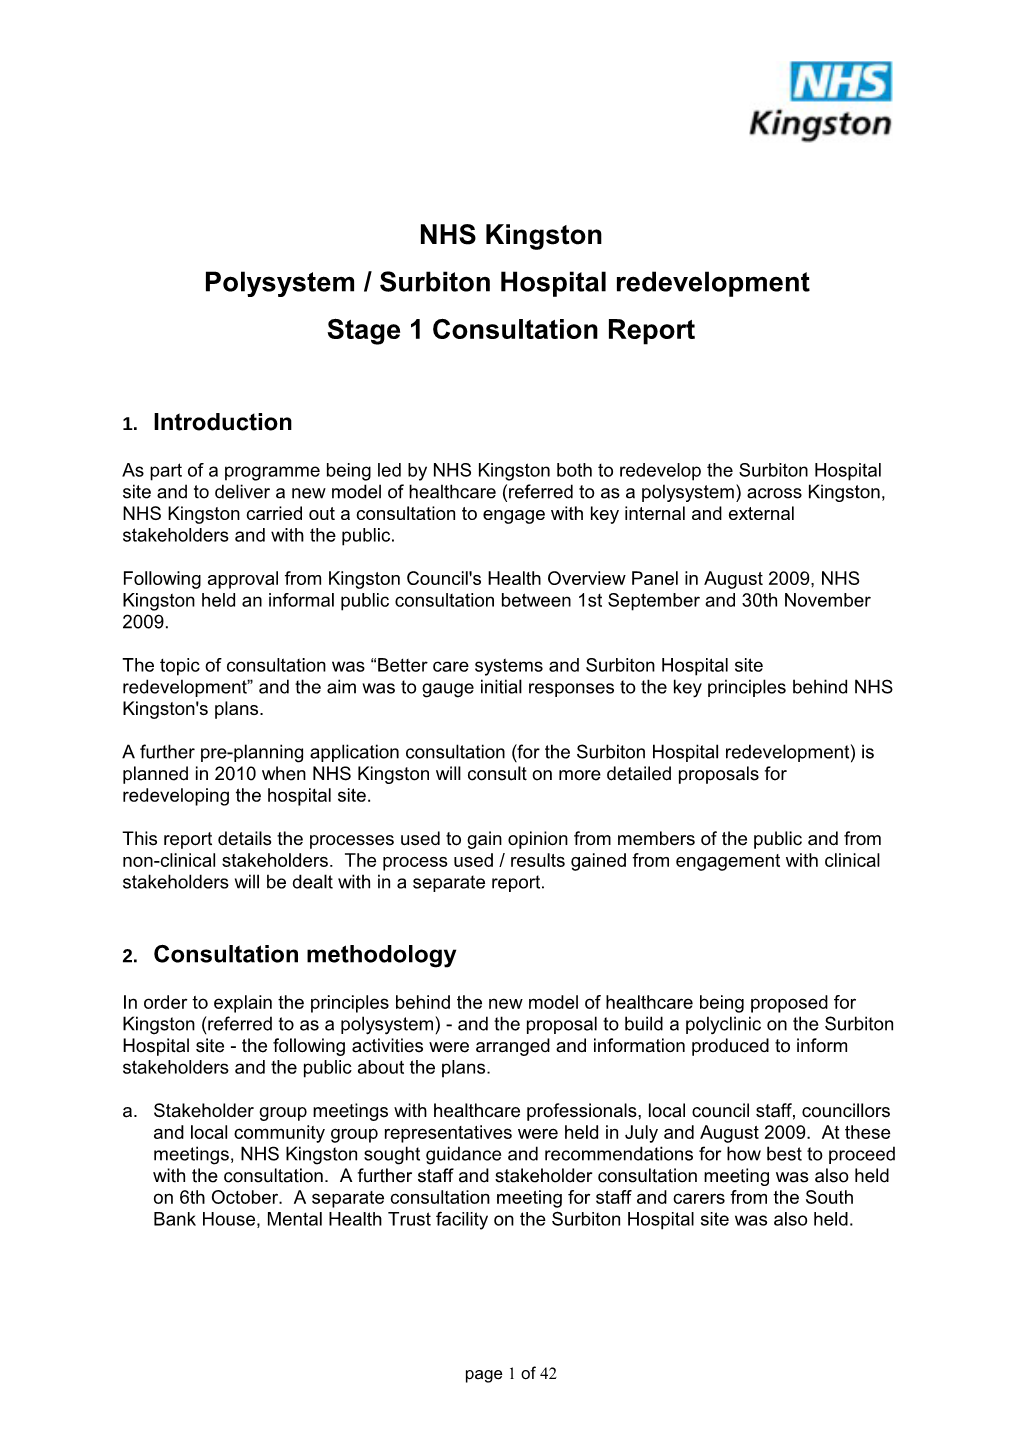 Polysystem / Surbiton Hospital Redevelopment